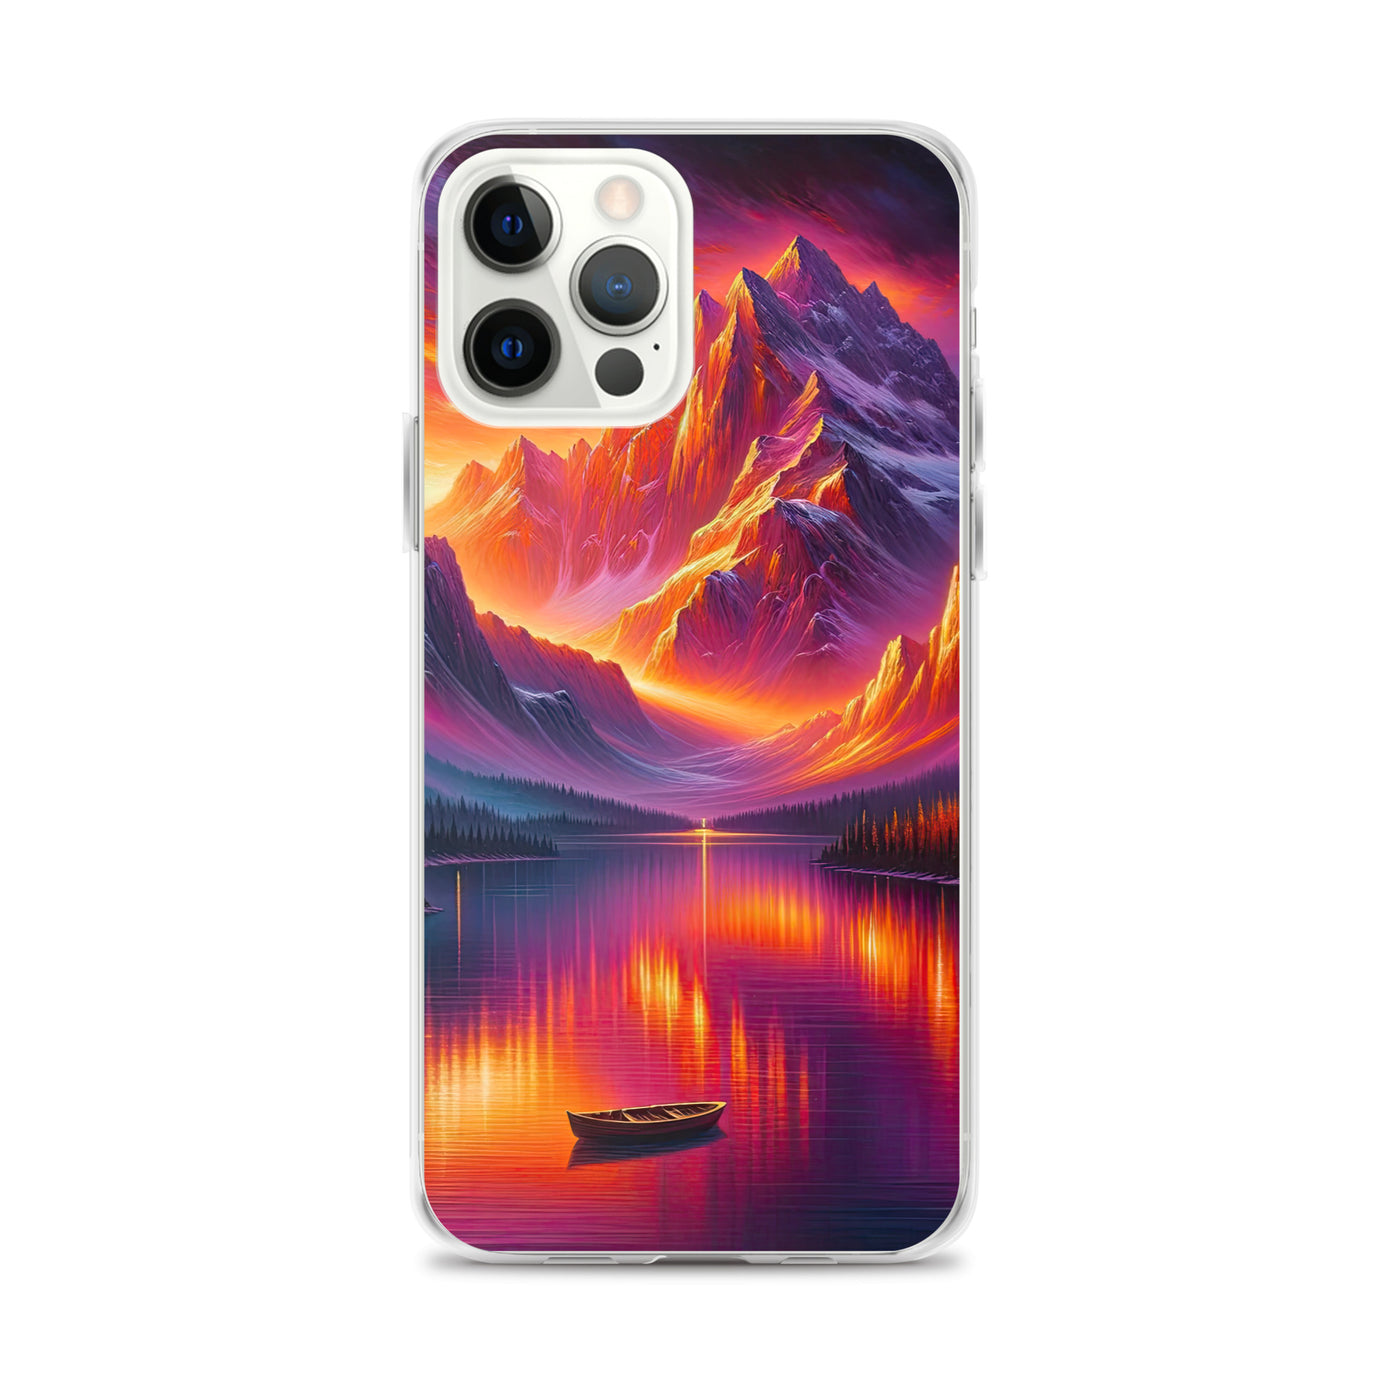 Ölgemälde eines Bootes auf einem Bergsee bei Sonnenuntergang, lebendige Orange-Lila Töne - iPhone Schutzhülle (durchsichtig) berge xxx yyy zzz iPhone 12 Pro Max